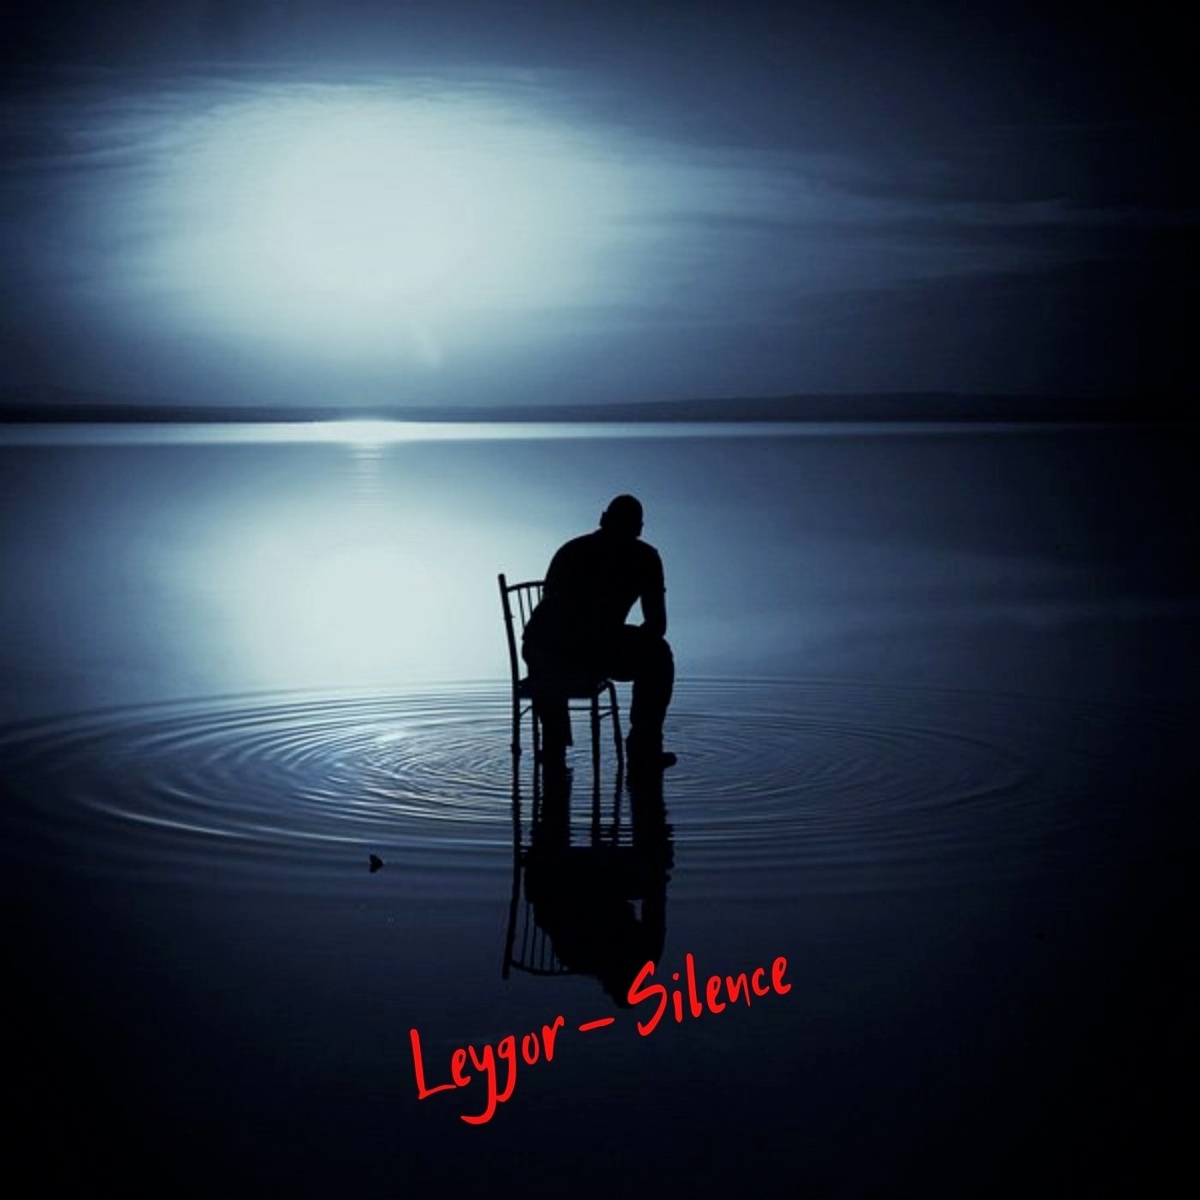 LeyGor - Silence (Original Mix)